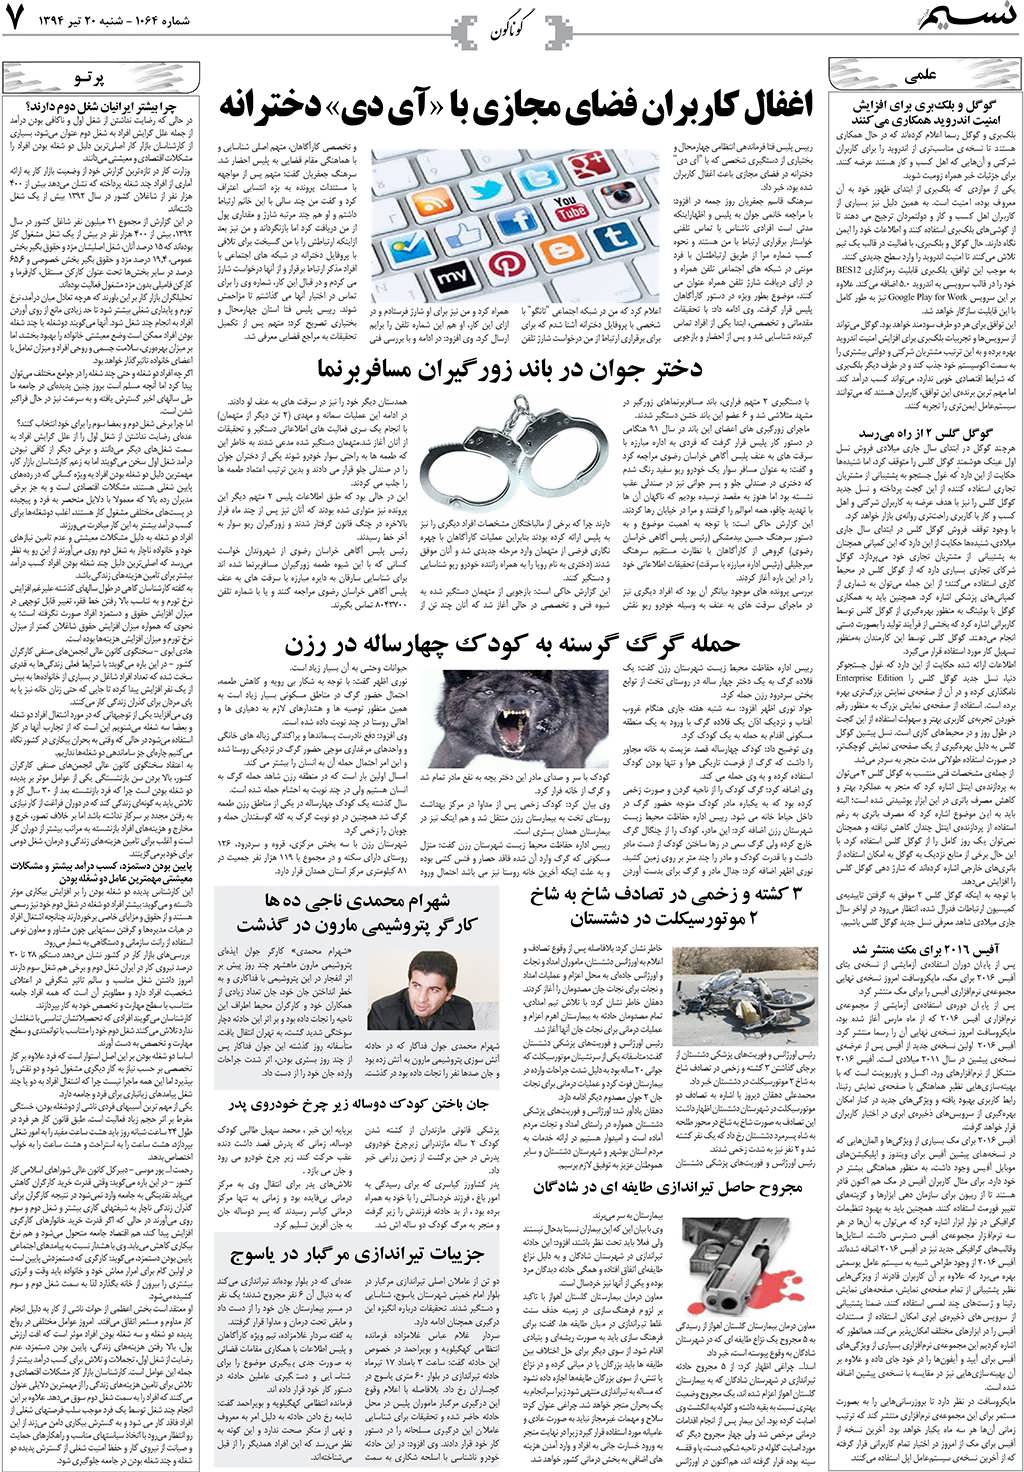 صفحه گوناگون روزنامه نسیم شماره 1064